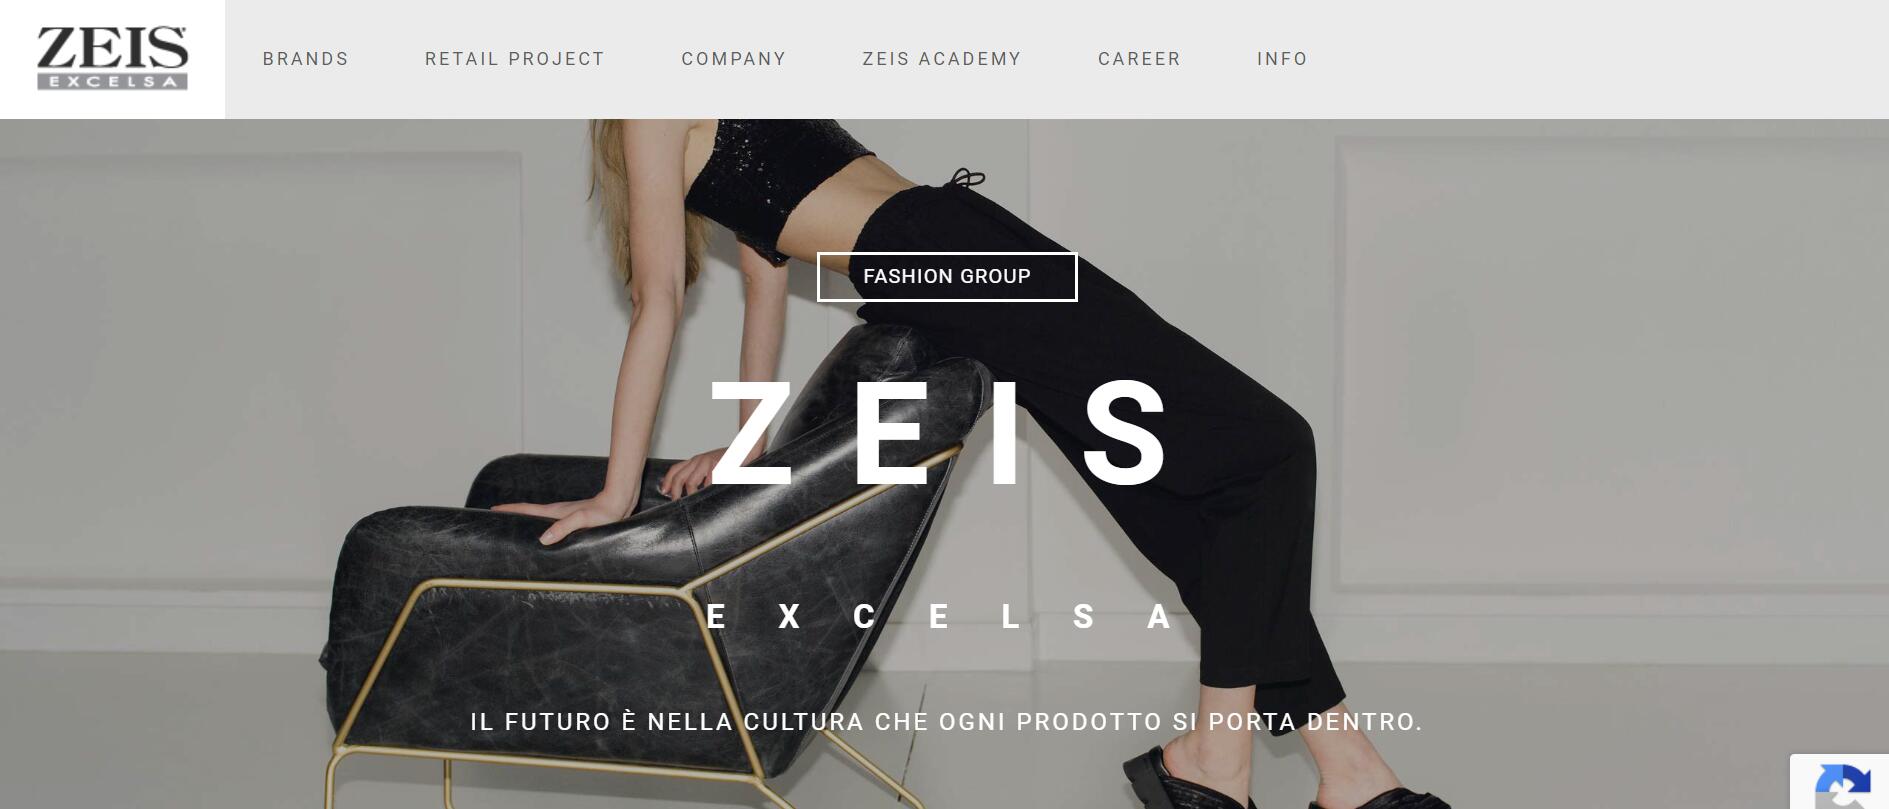 意大利鞋类制造商 Zeis Excelsa 集团营业额增长60%至2000万欧元，旗舰品牌 Cult 将持续生活方式转型